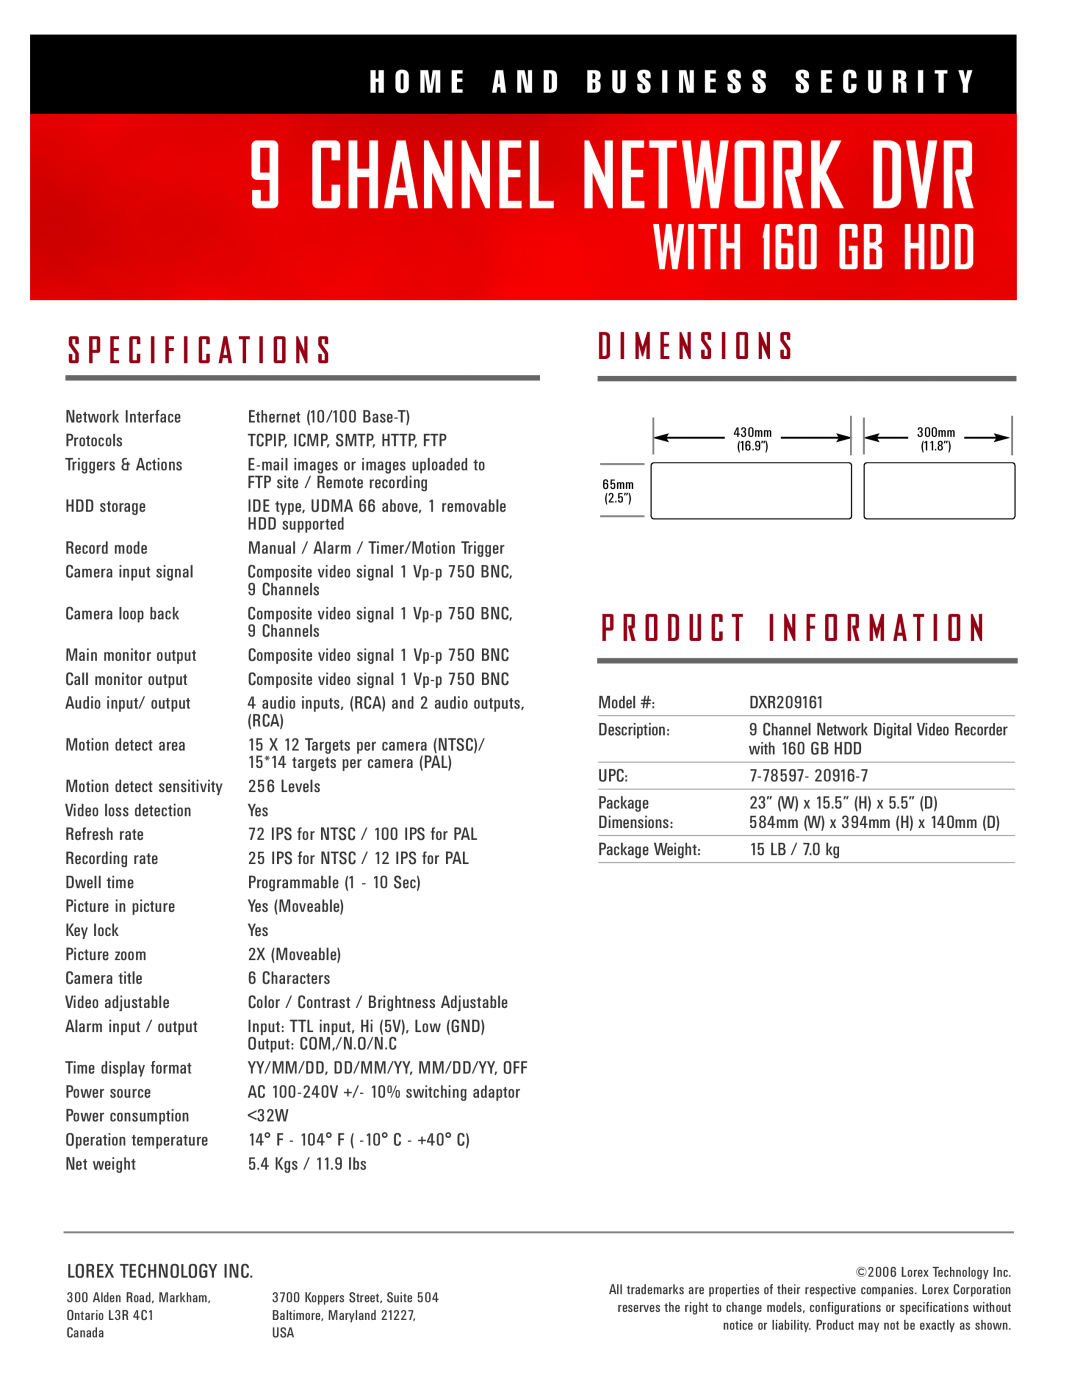 LOREX Technology DXR209161 manual Channel Network Dvr, WITH 160 GB HDD, S P E C I F I C A T I O N S, D I M E N S I O N S 